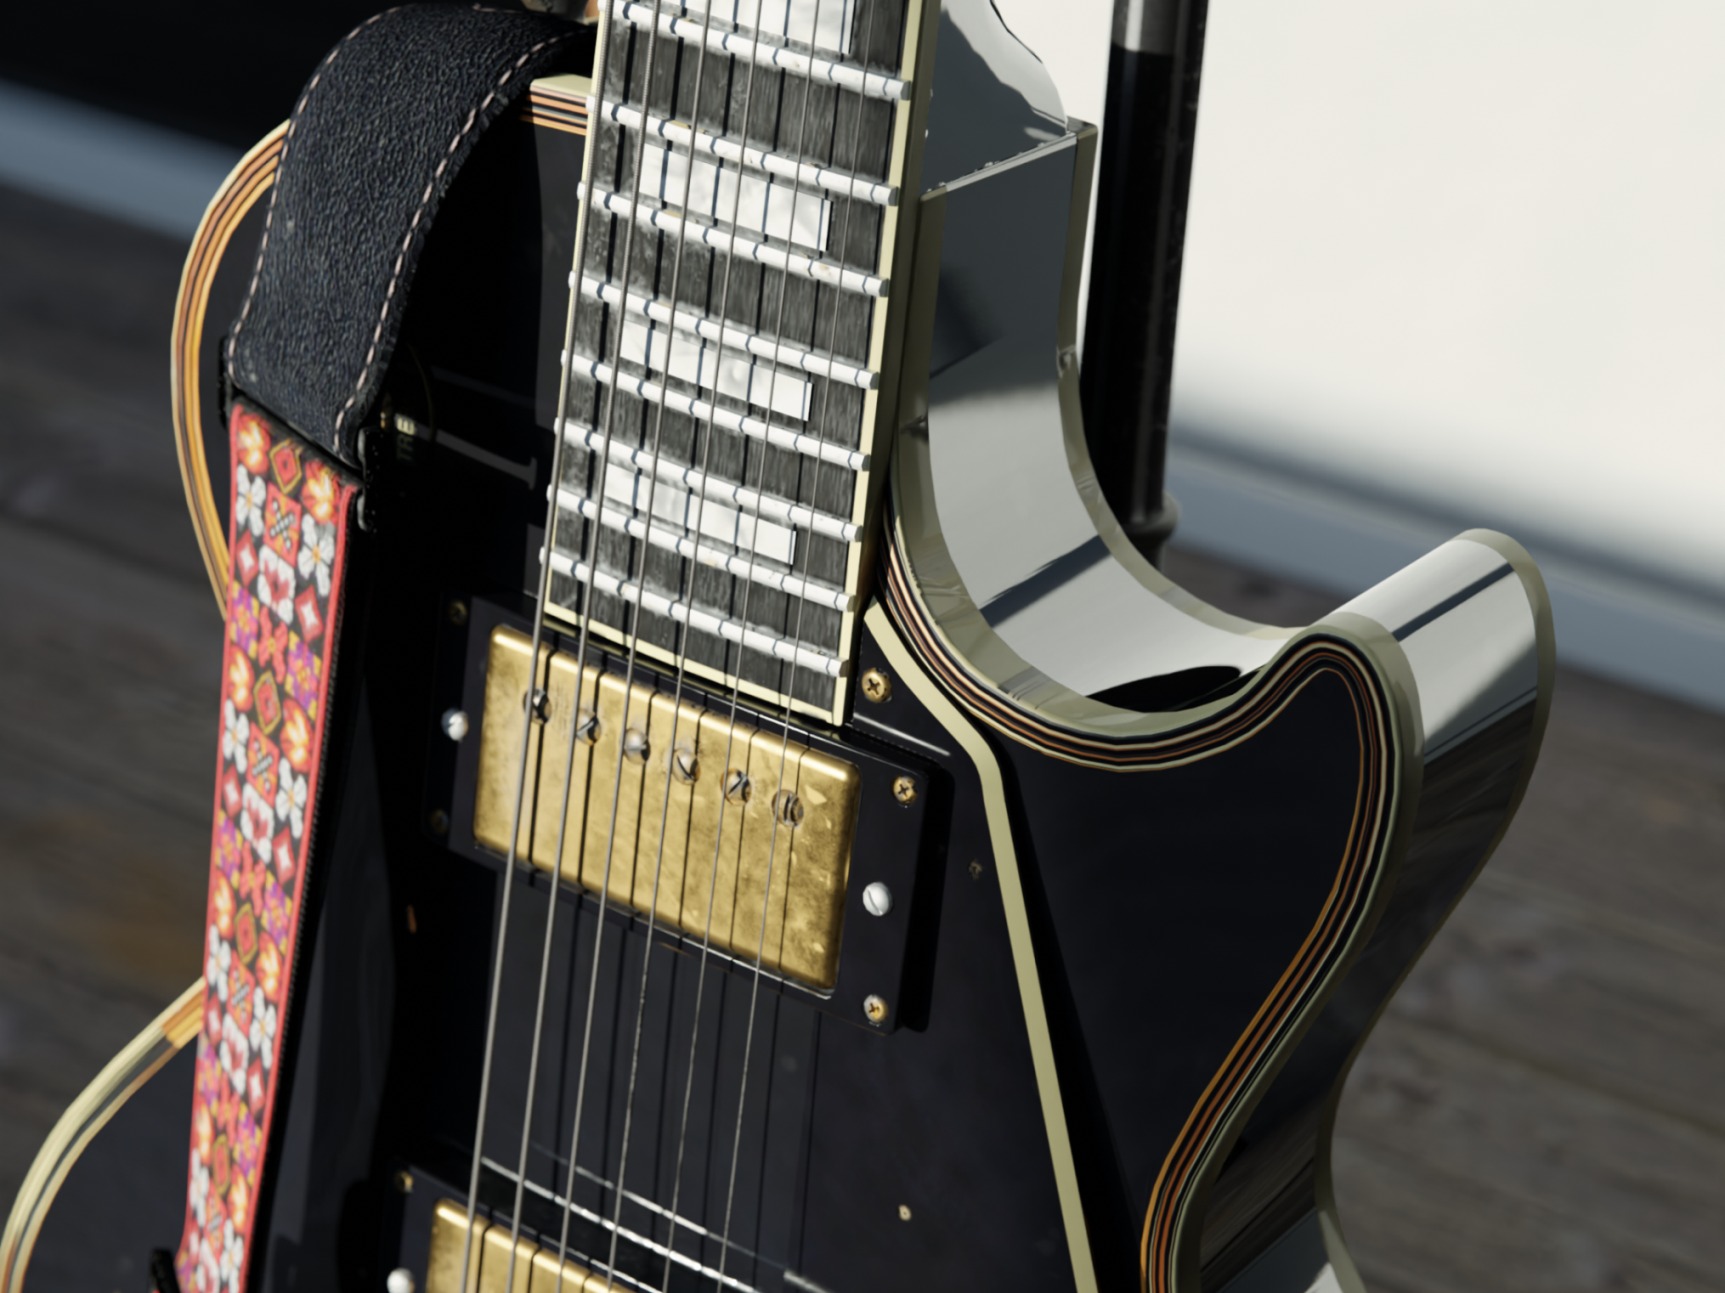 Gibson Les Paul黑美人电吉他 - Blender渲染